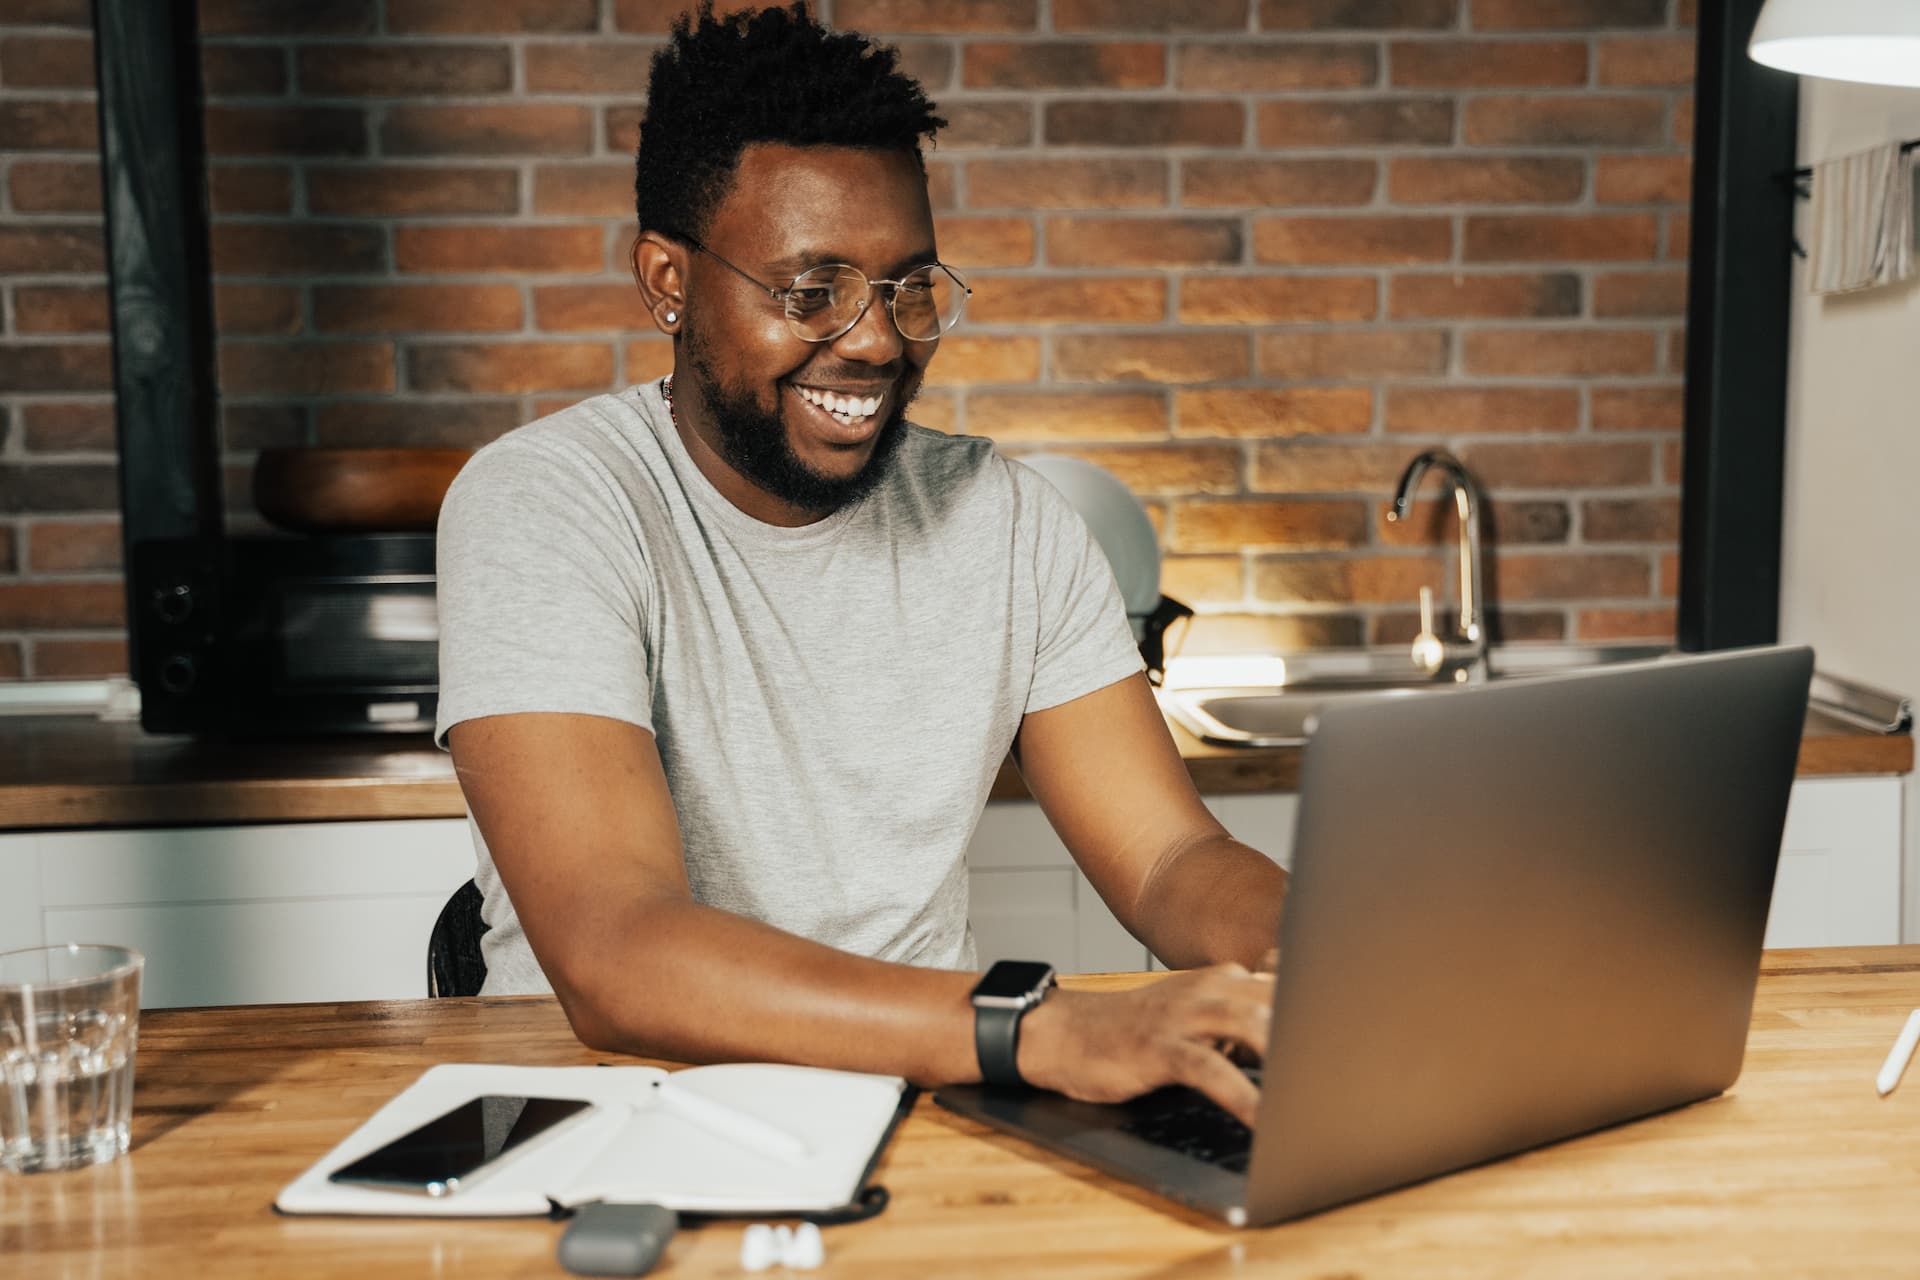 Smiling man looking at laptop in kitchen.